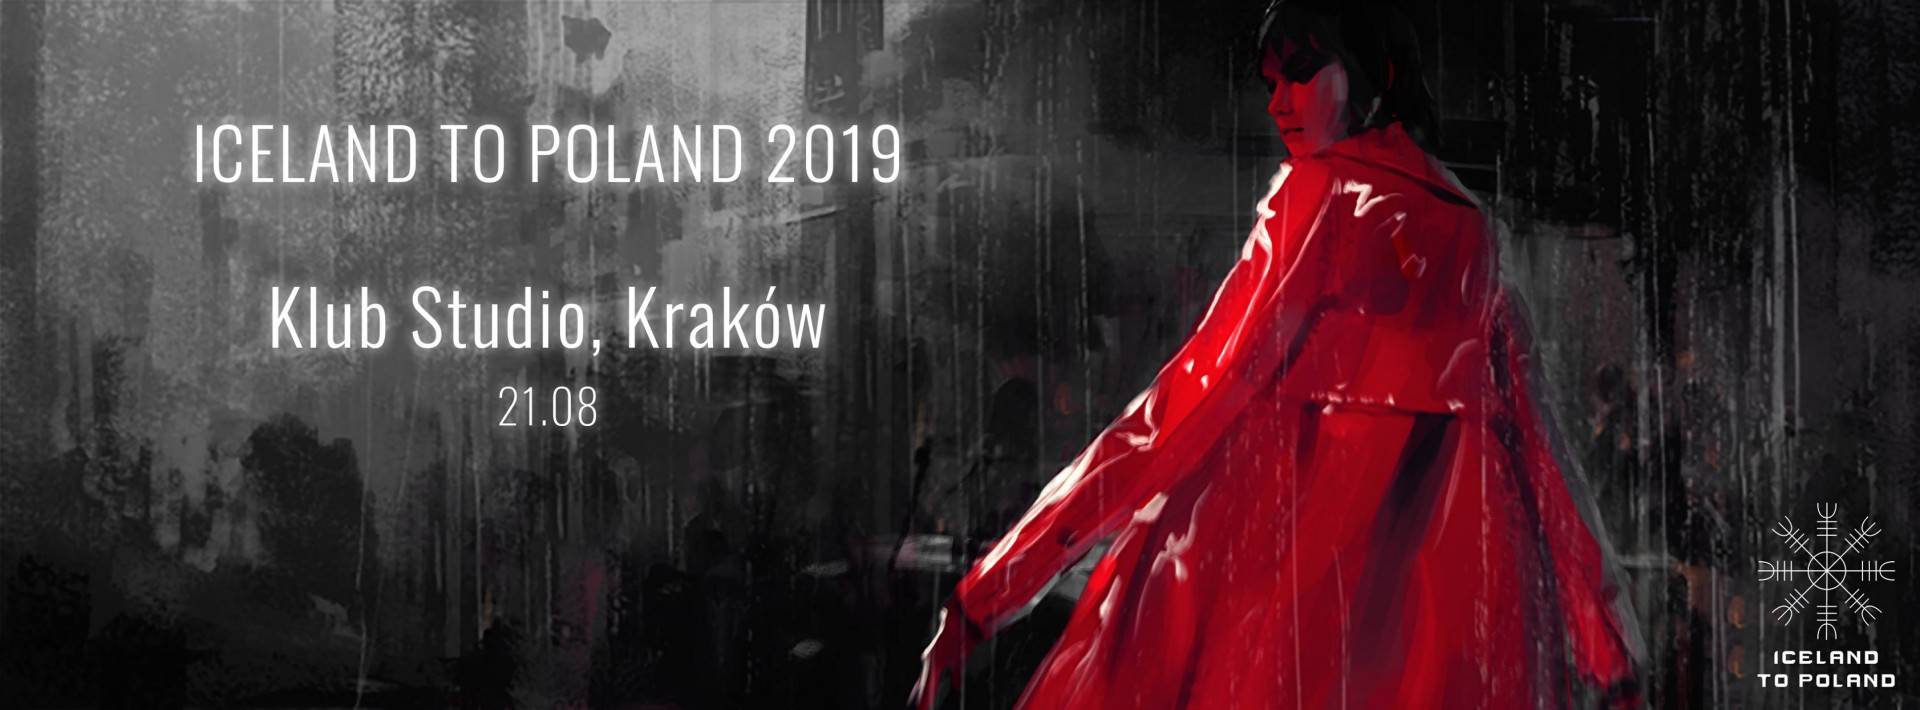 Iceland To Poland 2019